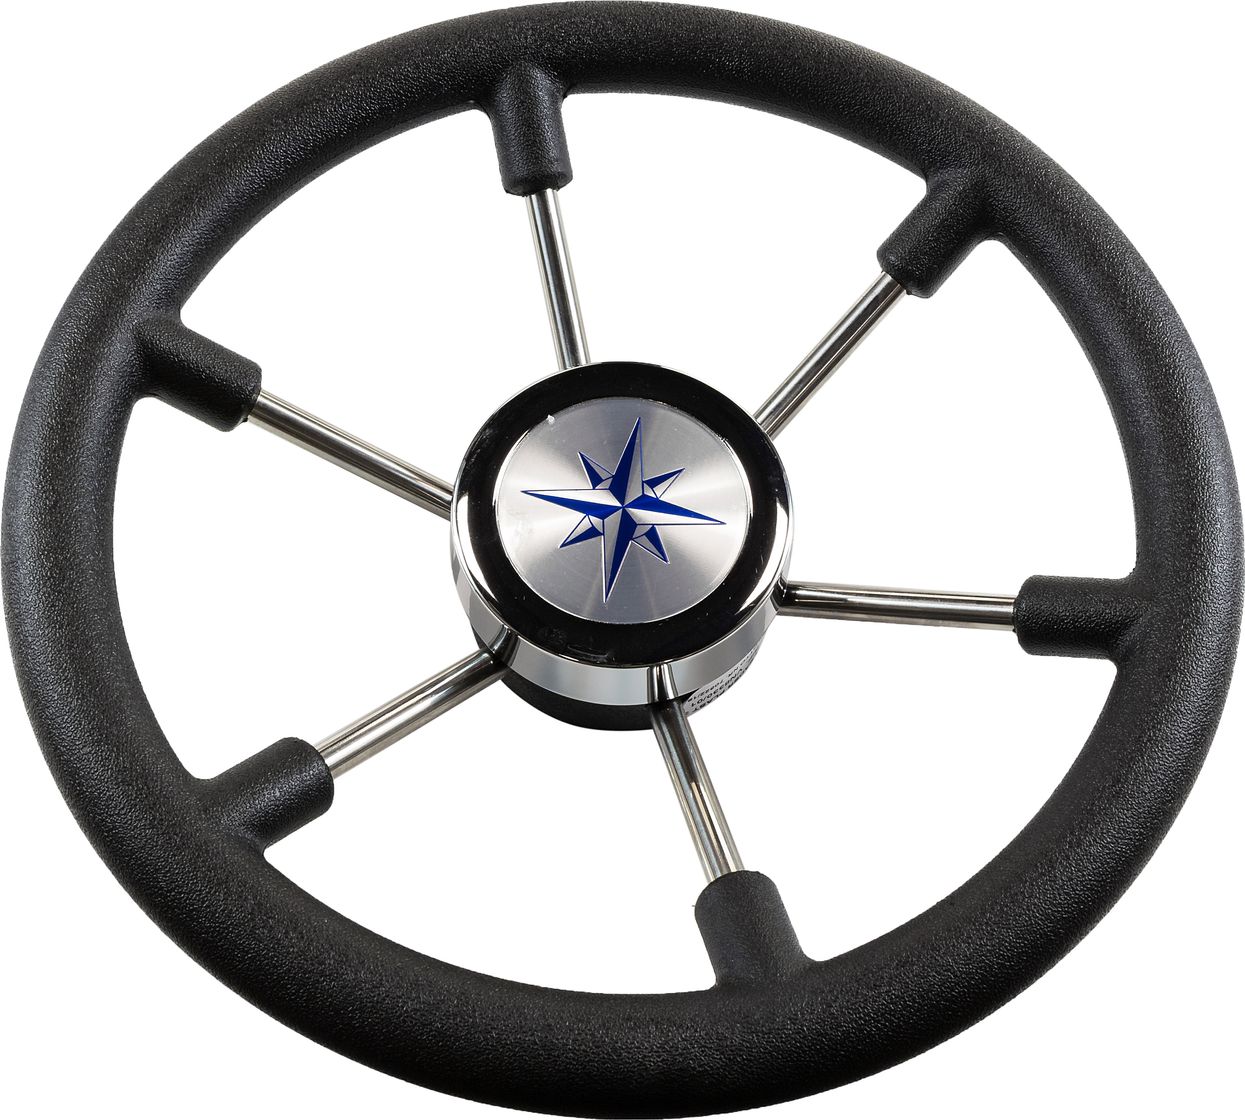 Рулевое колесо LEADER PLAST черный обод серебряные спицы д. 330 мм VN8330-01 рулевое колесо delfino обод спицы серебряные д 310 мм vn70103 01